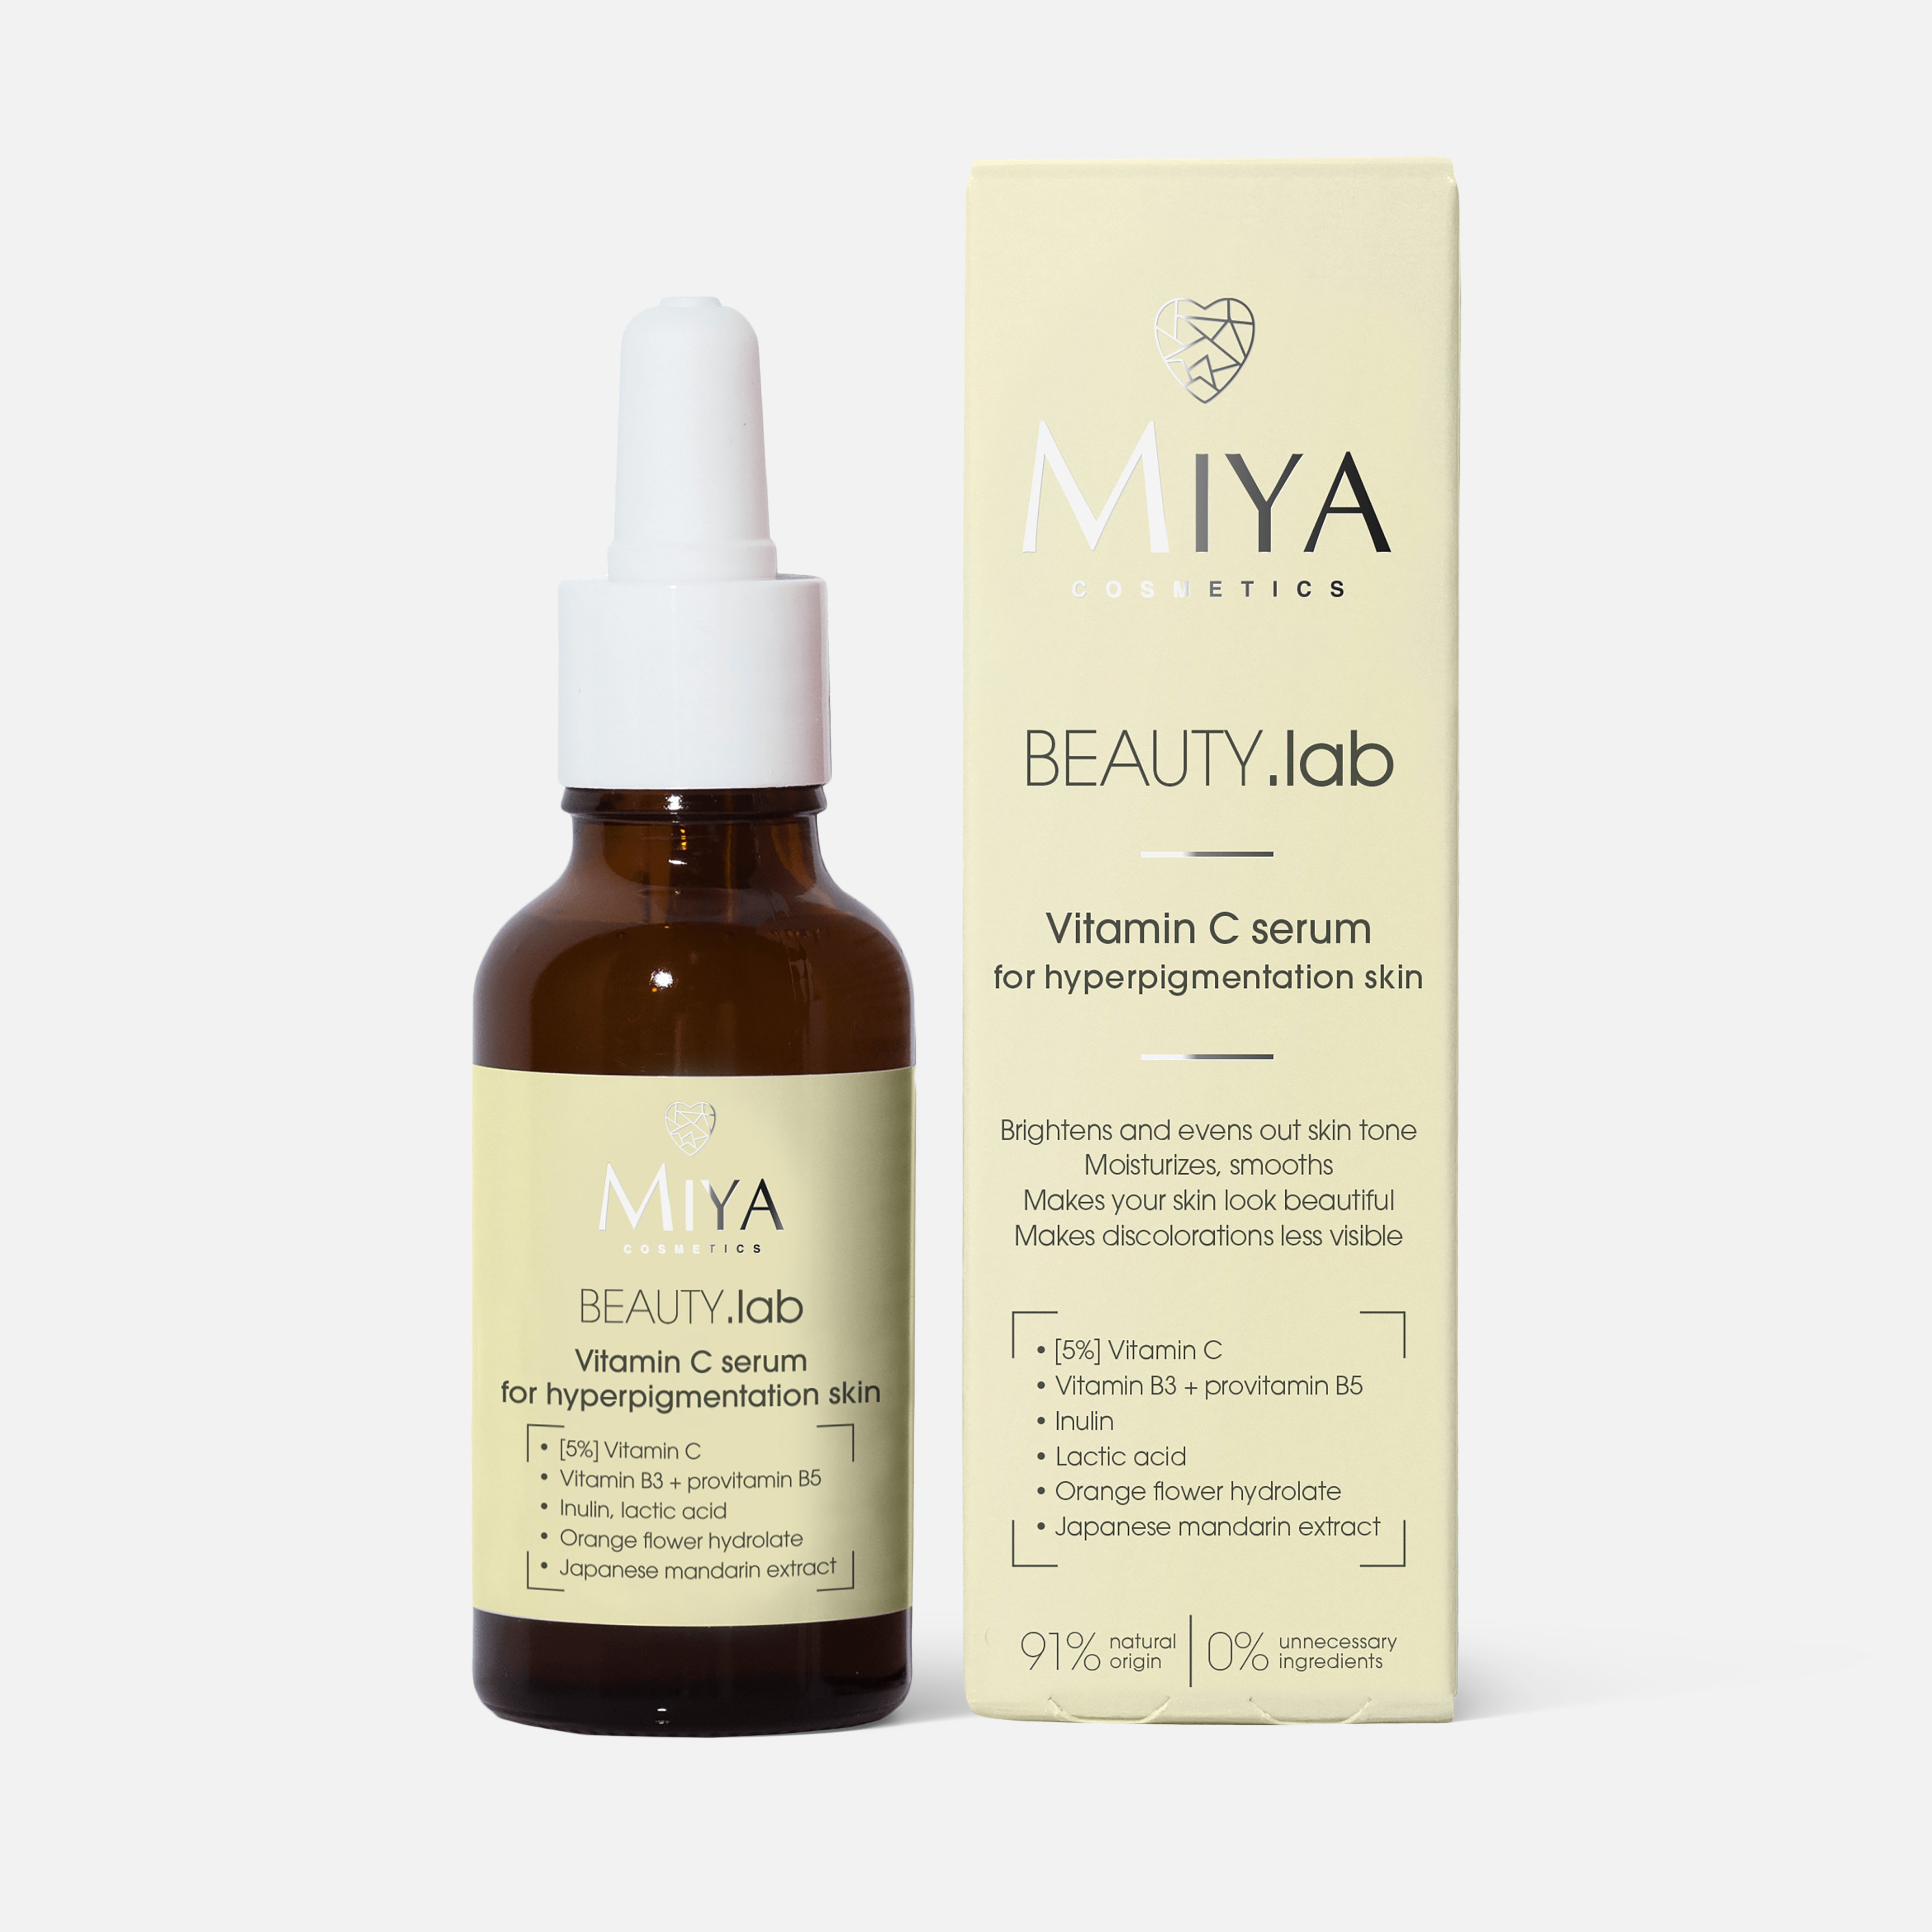 Сыворотка для лица Miya cosmetics Beauty.Lab for hyperpigmentation skin Vitamin C, 30 мл asiakiss сыворотка для лица шеи и области декольте с гиалуроновой кислотой 8